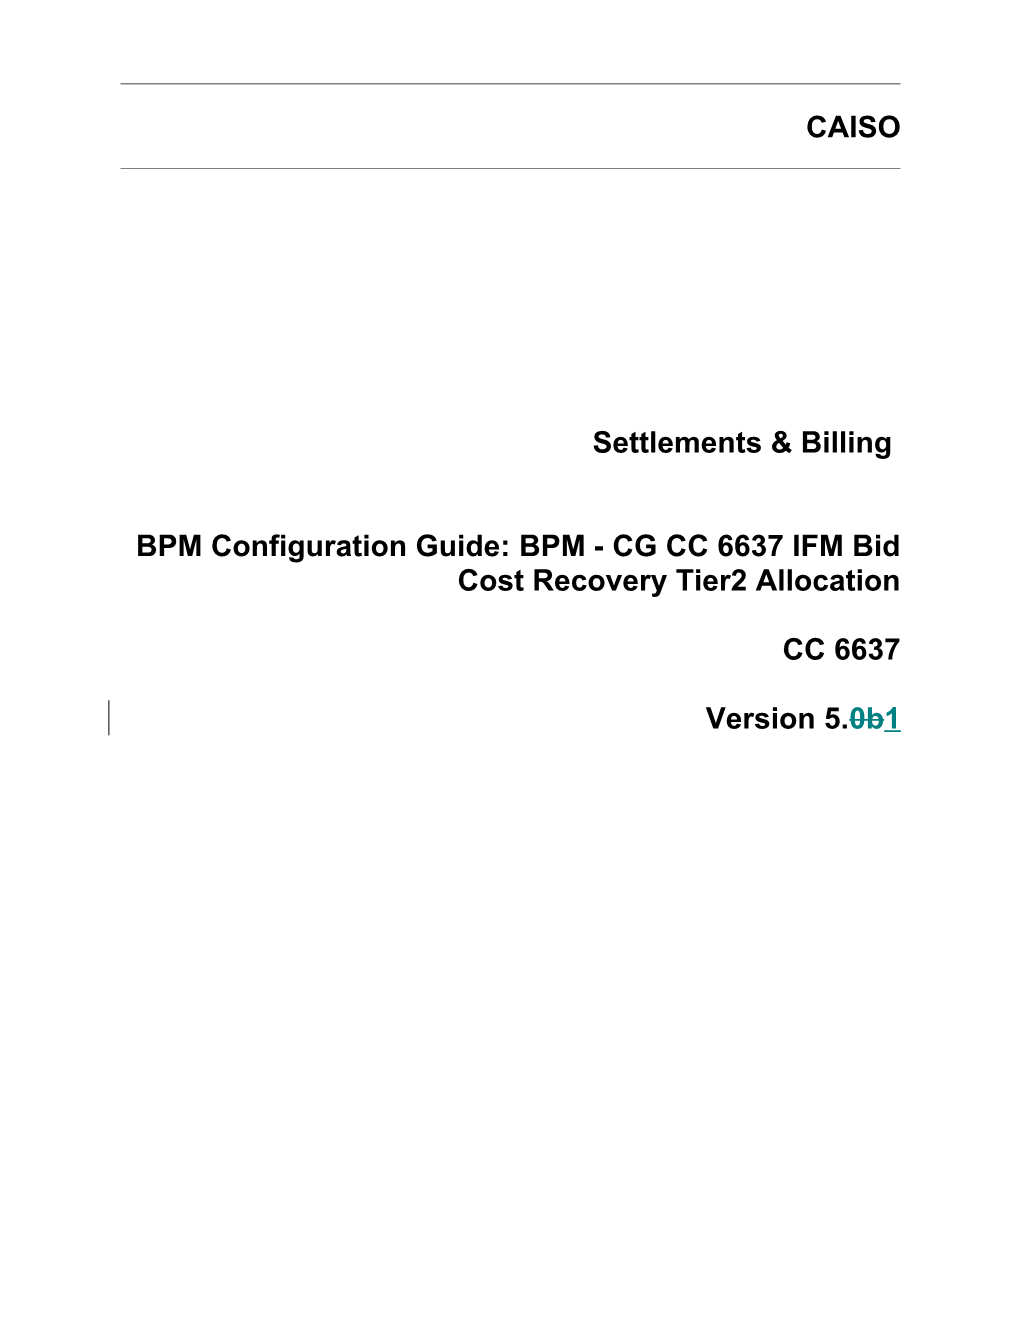 BPM - CG CC 6637 IFM Bid Cost Recovery Tier2 Allocation